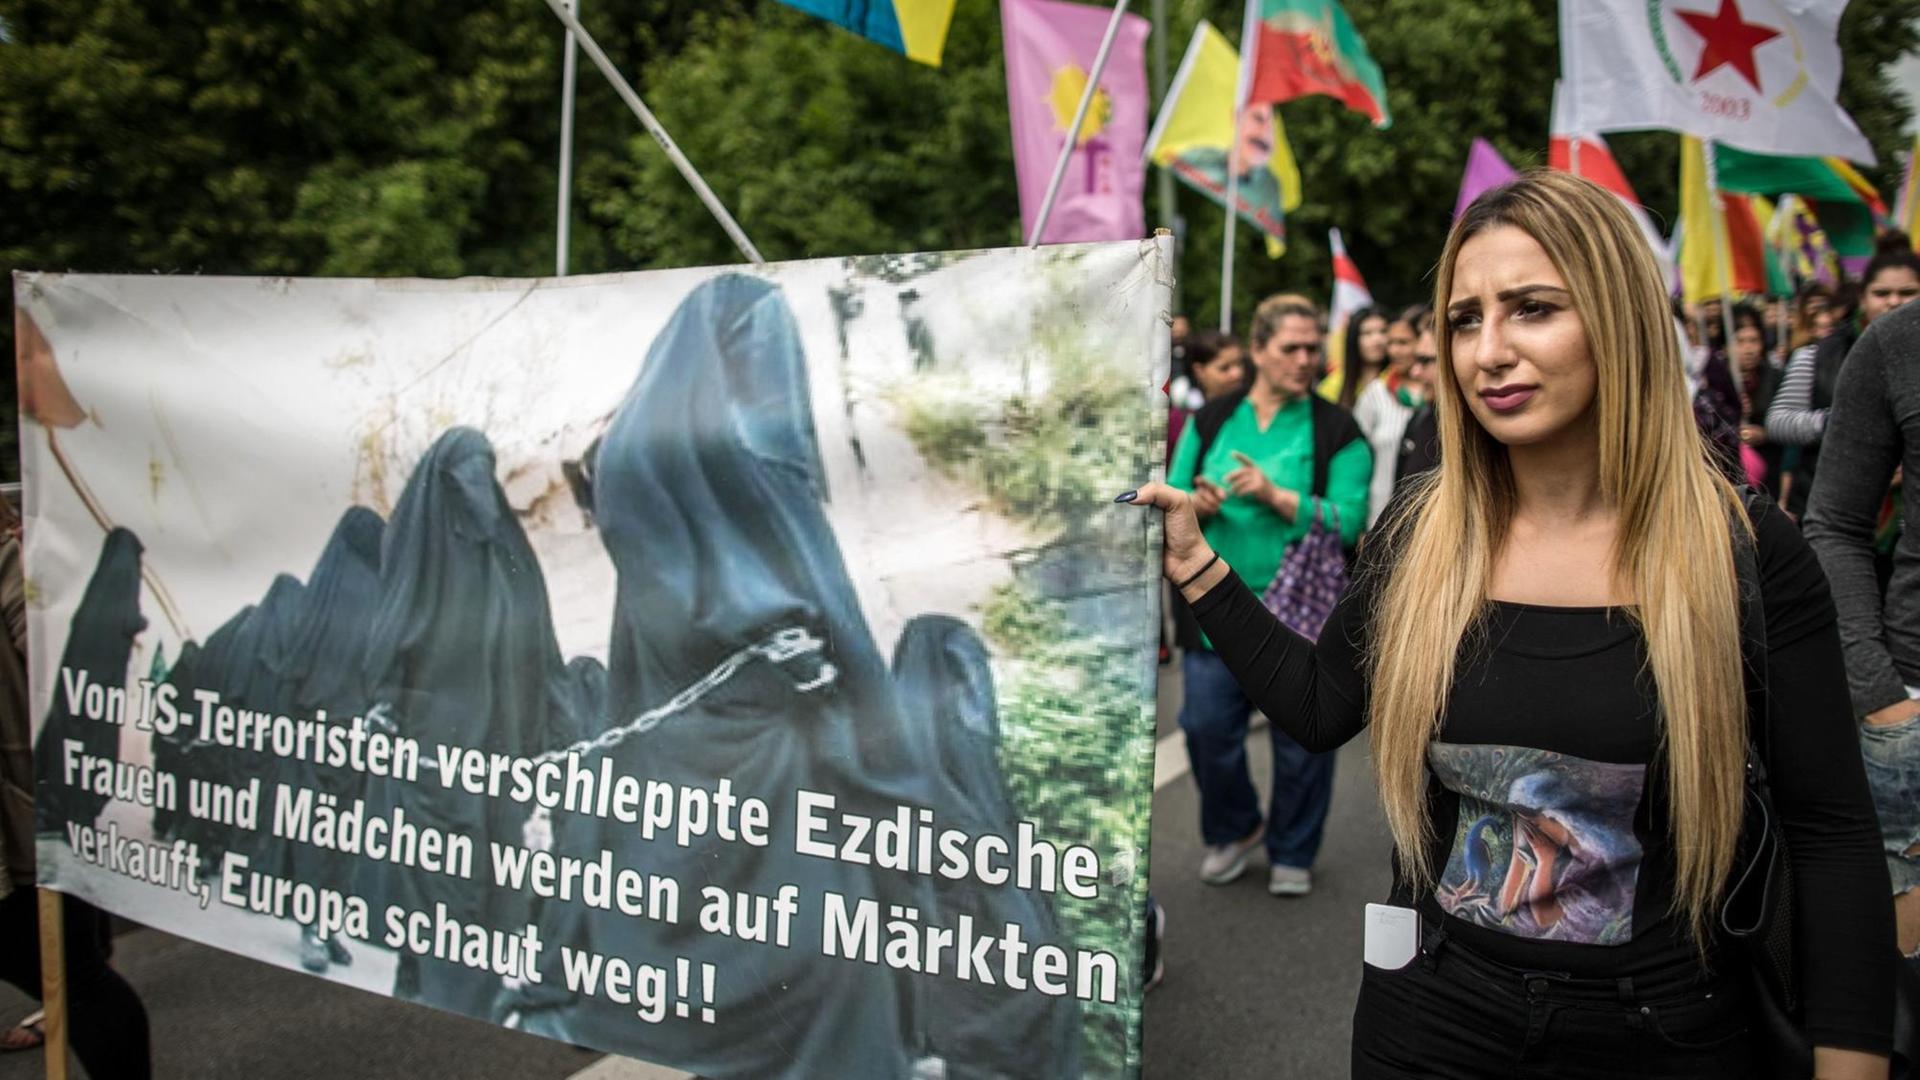 Mit einem Protestzug protestieren Demonstranten am 30.07.2016 in Bielefeld unter dem Motto "Jährlicher Gedenktag zum Völkermord an den Jesiden in Sengal". Vor zwei Jahren verübten Anhänger des Islamischen Staates IS ein Massaker an Jesiden im nordirakischen Schindschar.